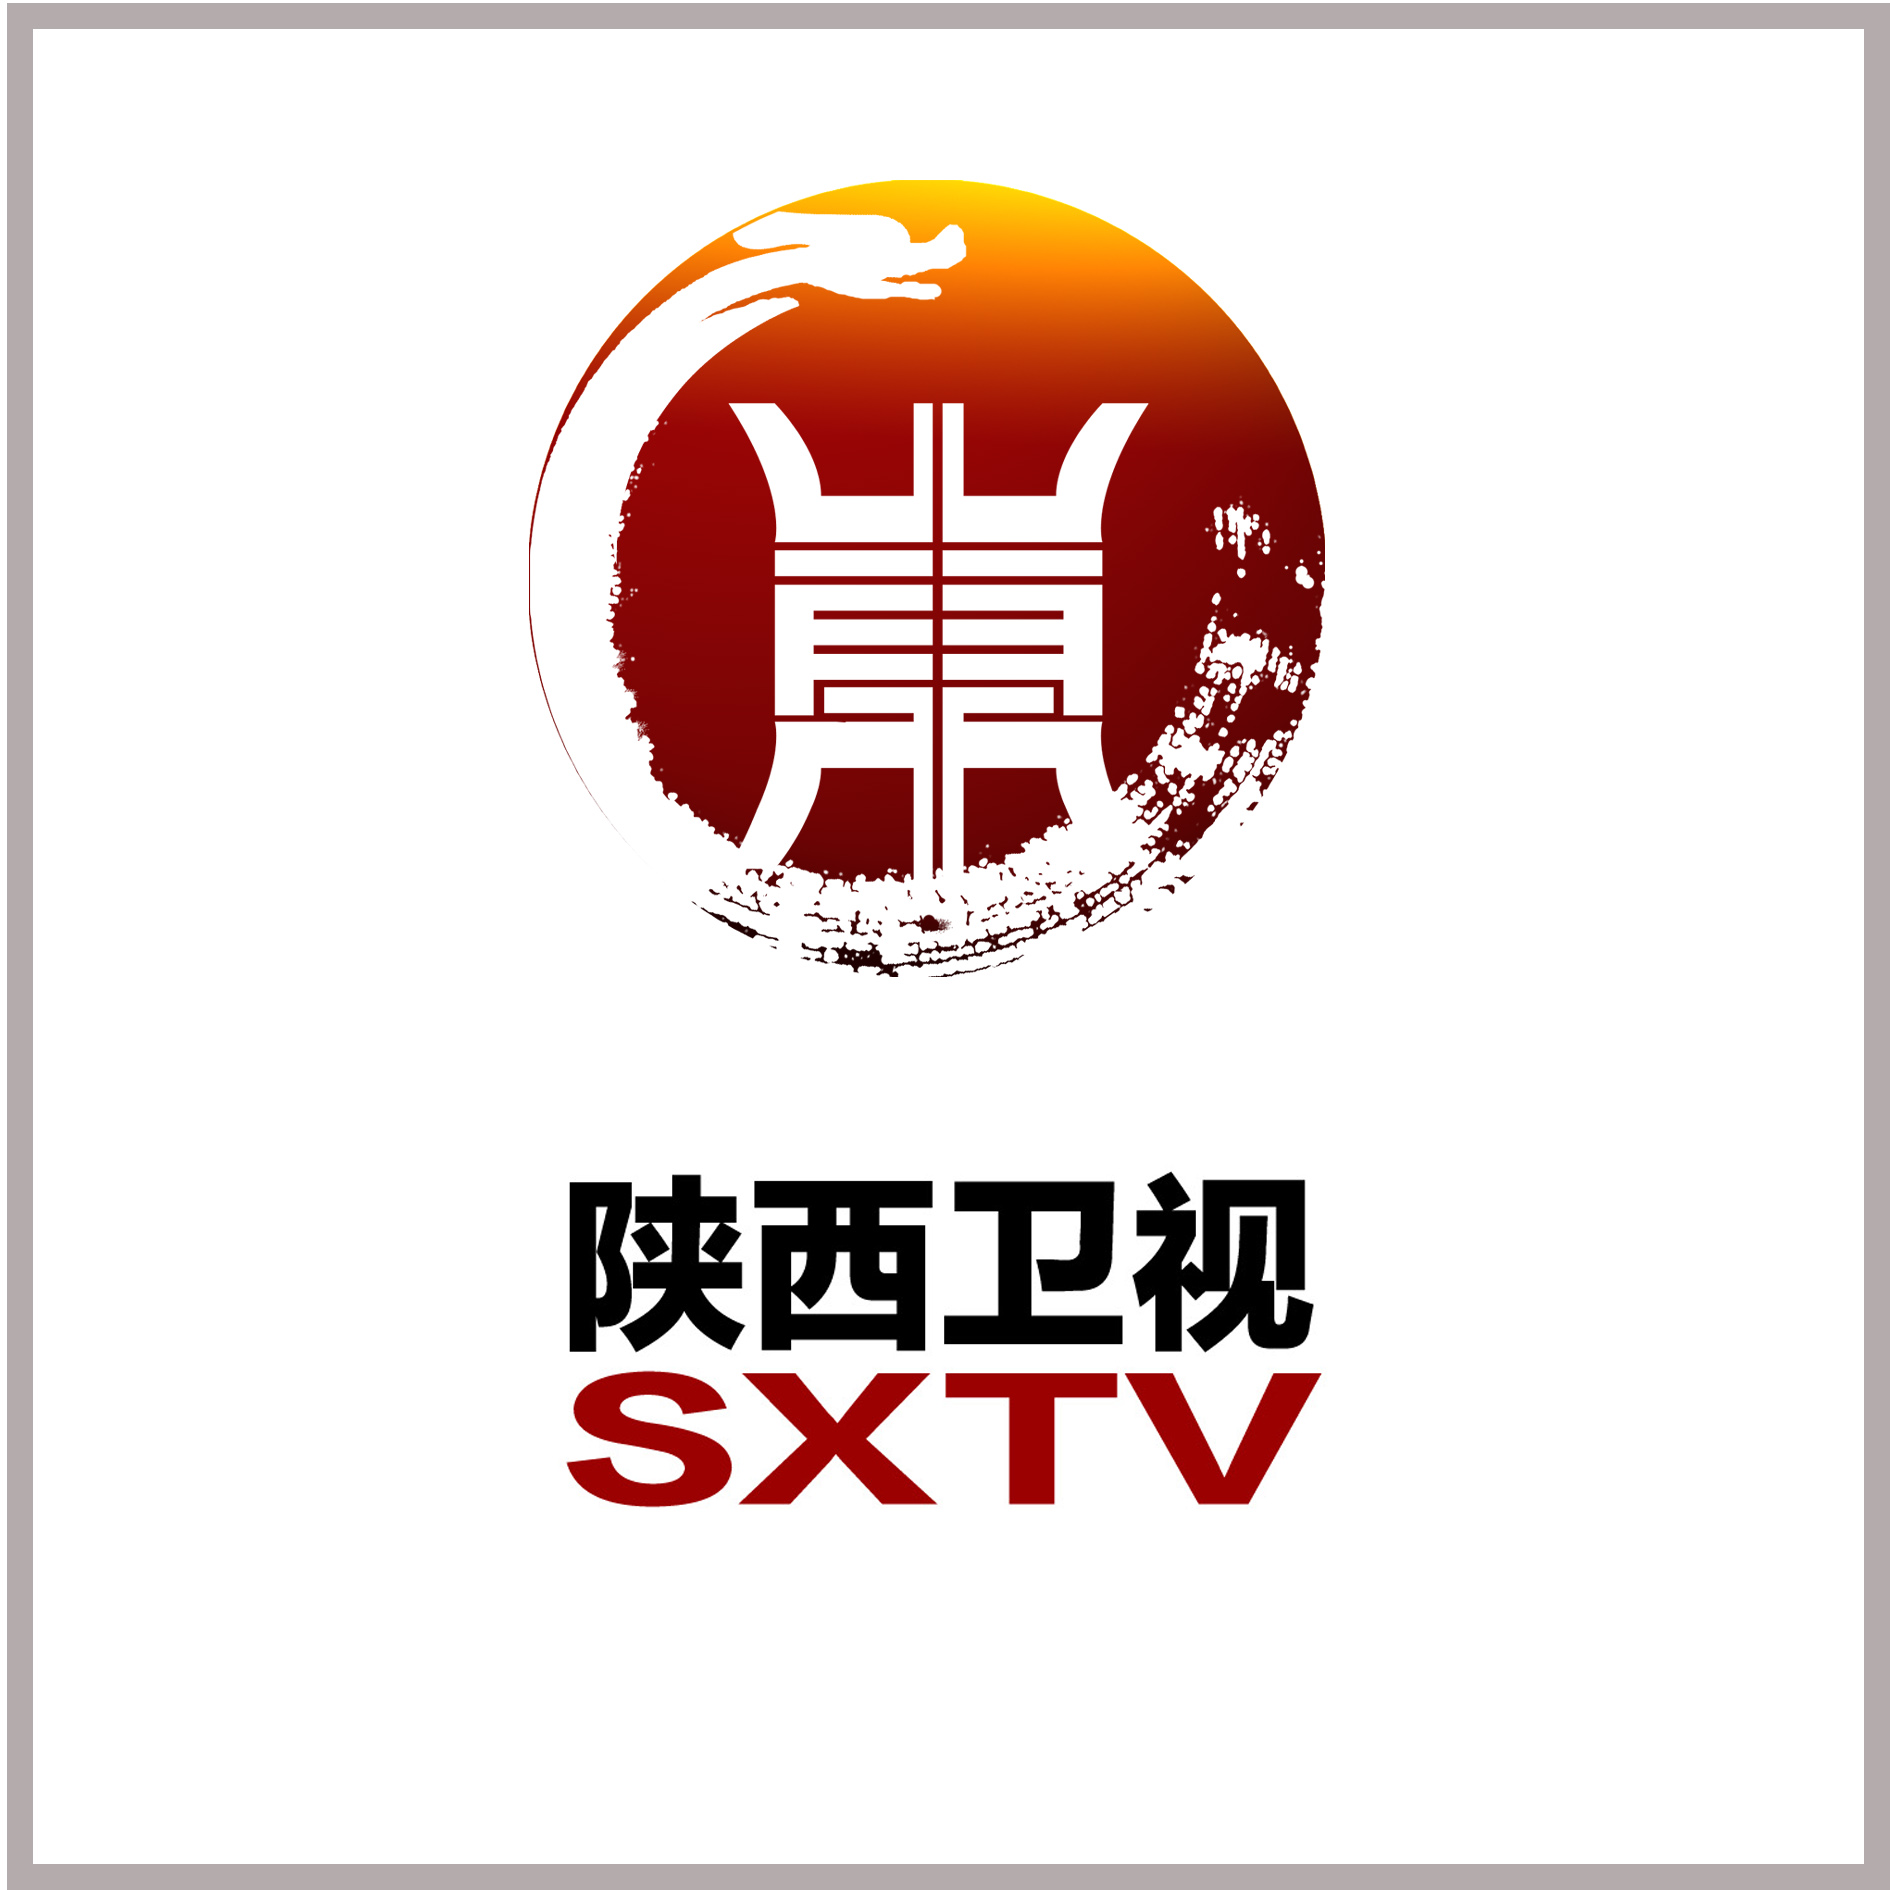 万元重金:陕西广播电视台征台标第25651582号稿件